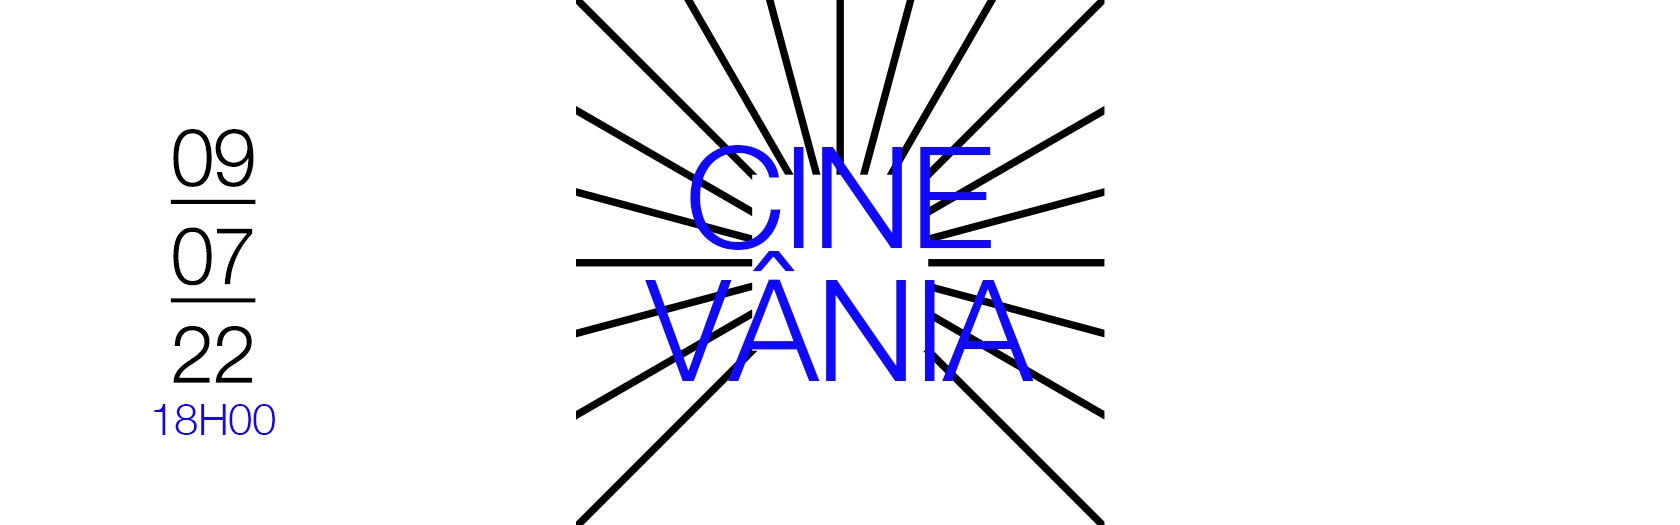 ES_R_5_A_Flyer-Cine-Vania